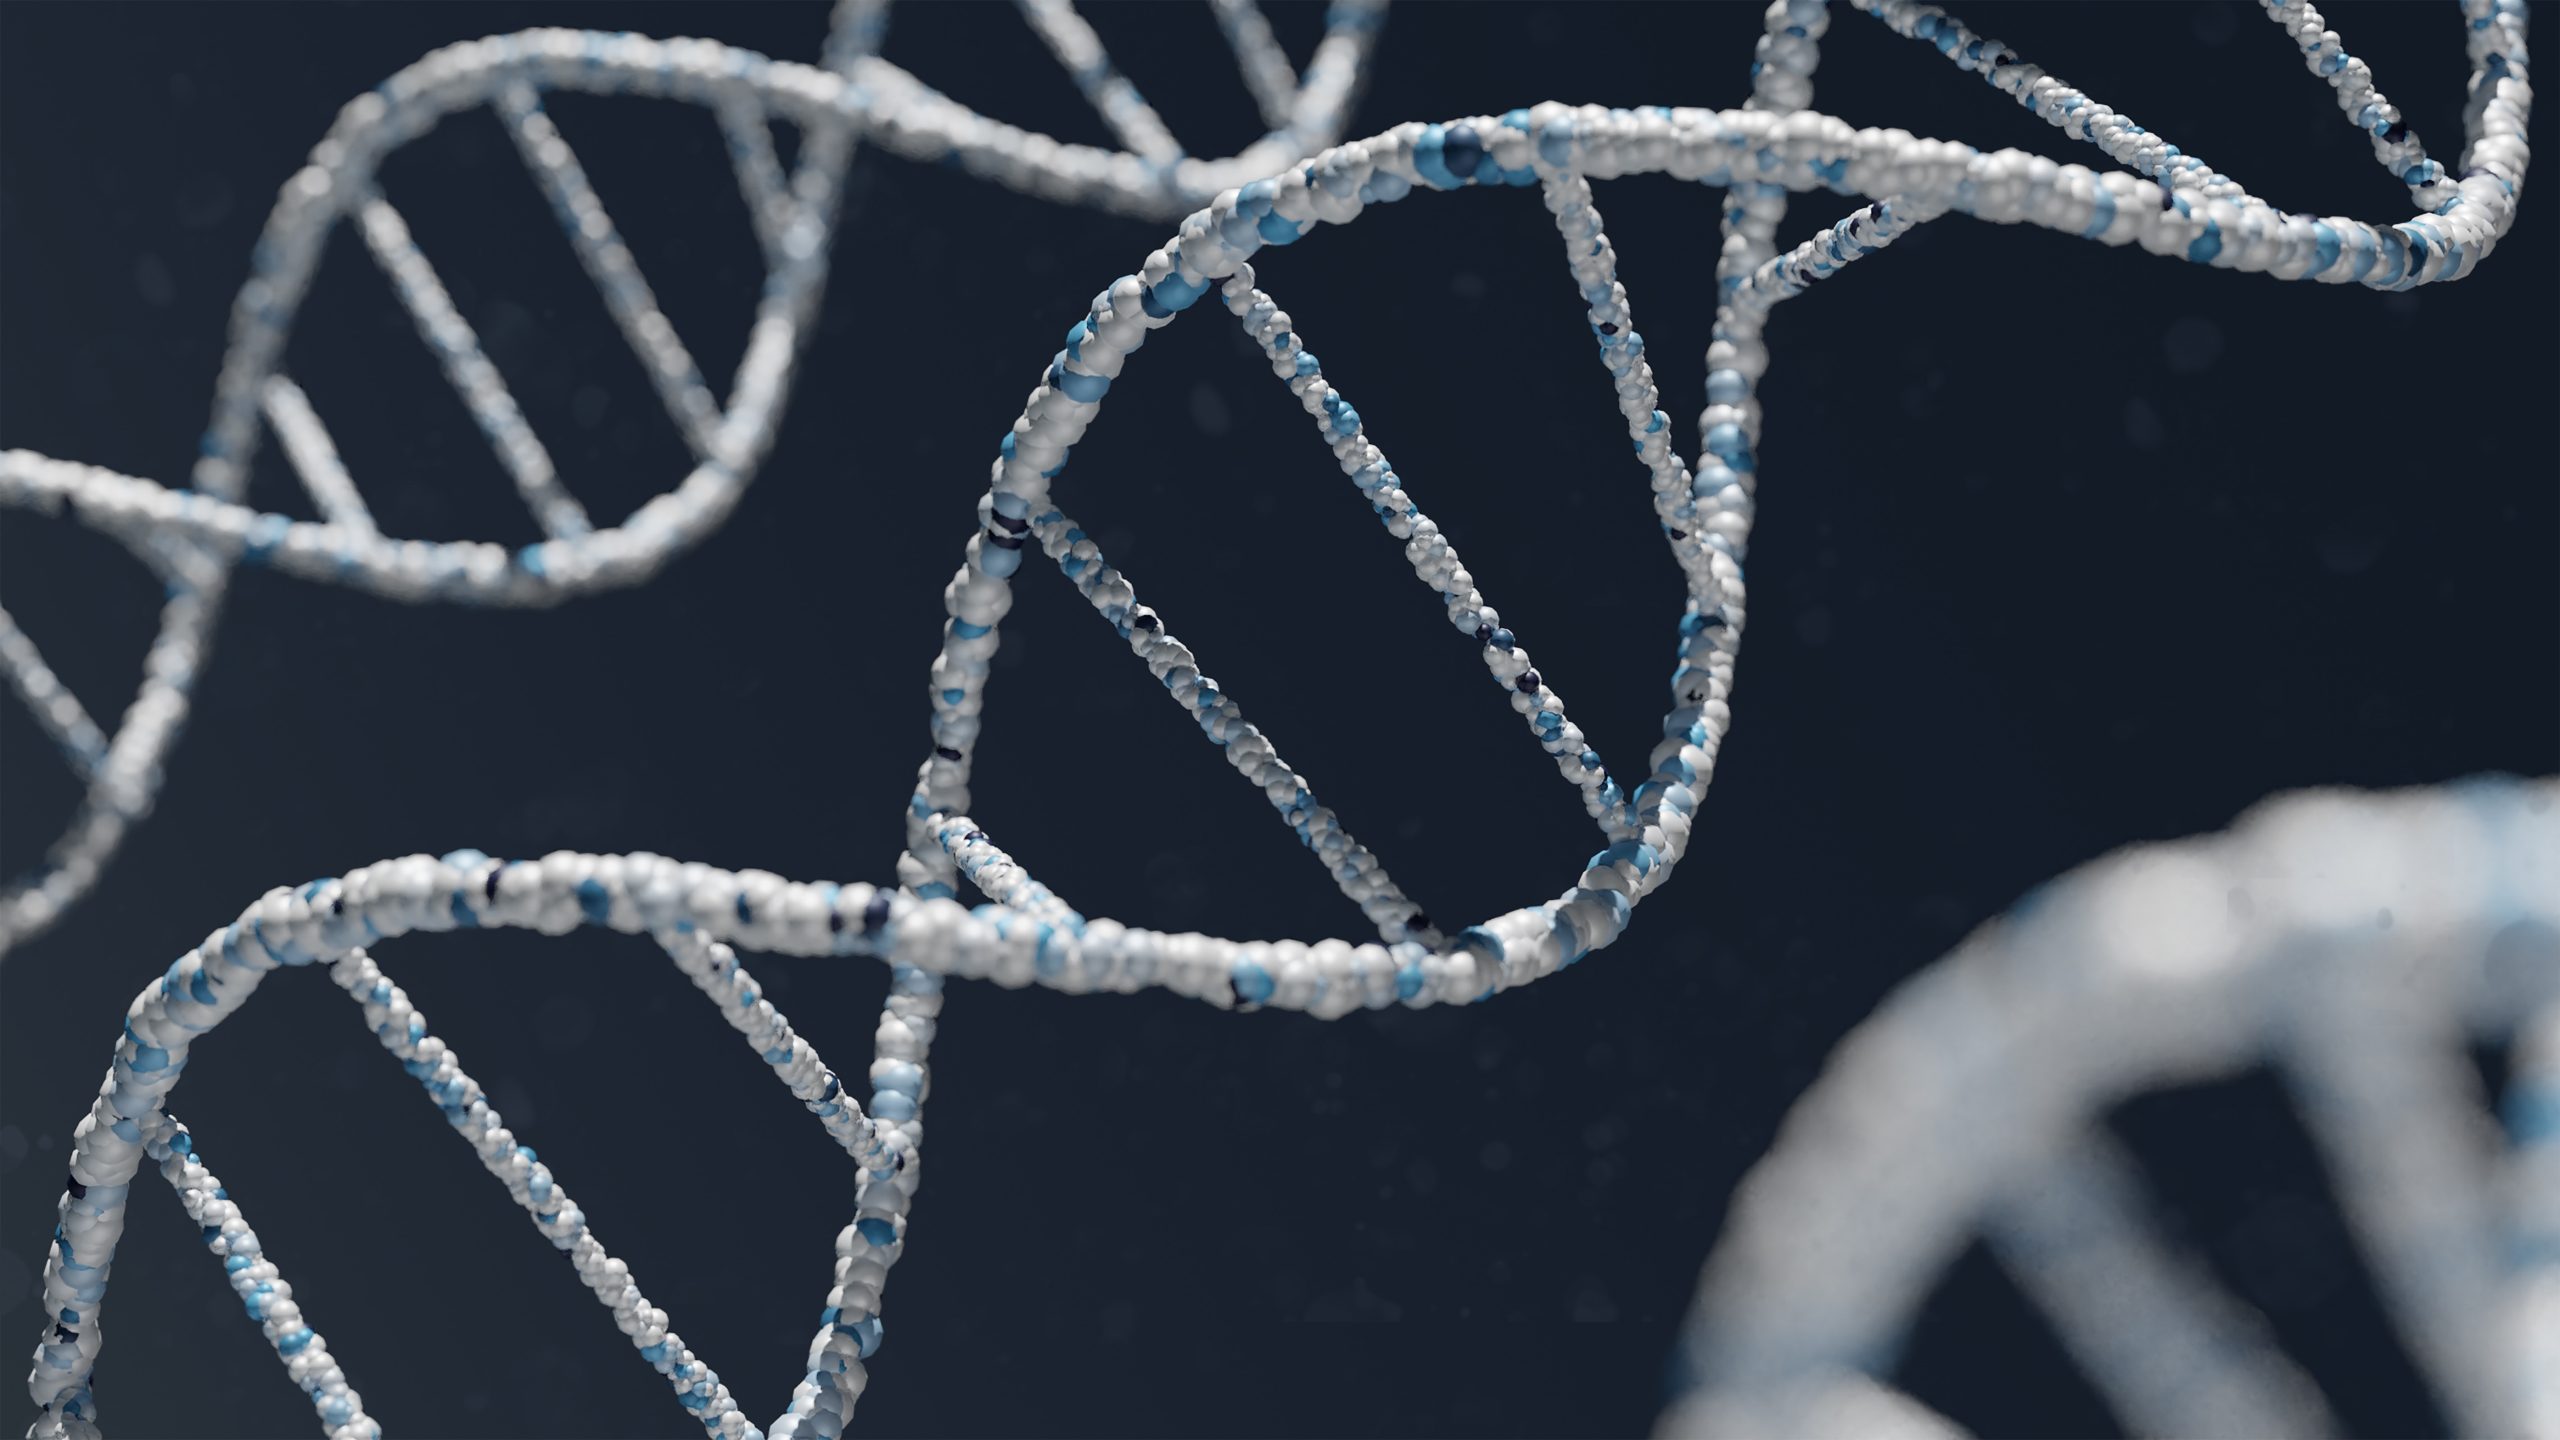 Zajímavé poznatky ze života „skákajících genů“